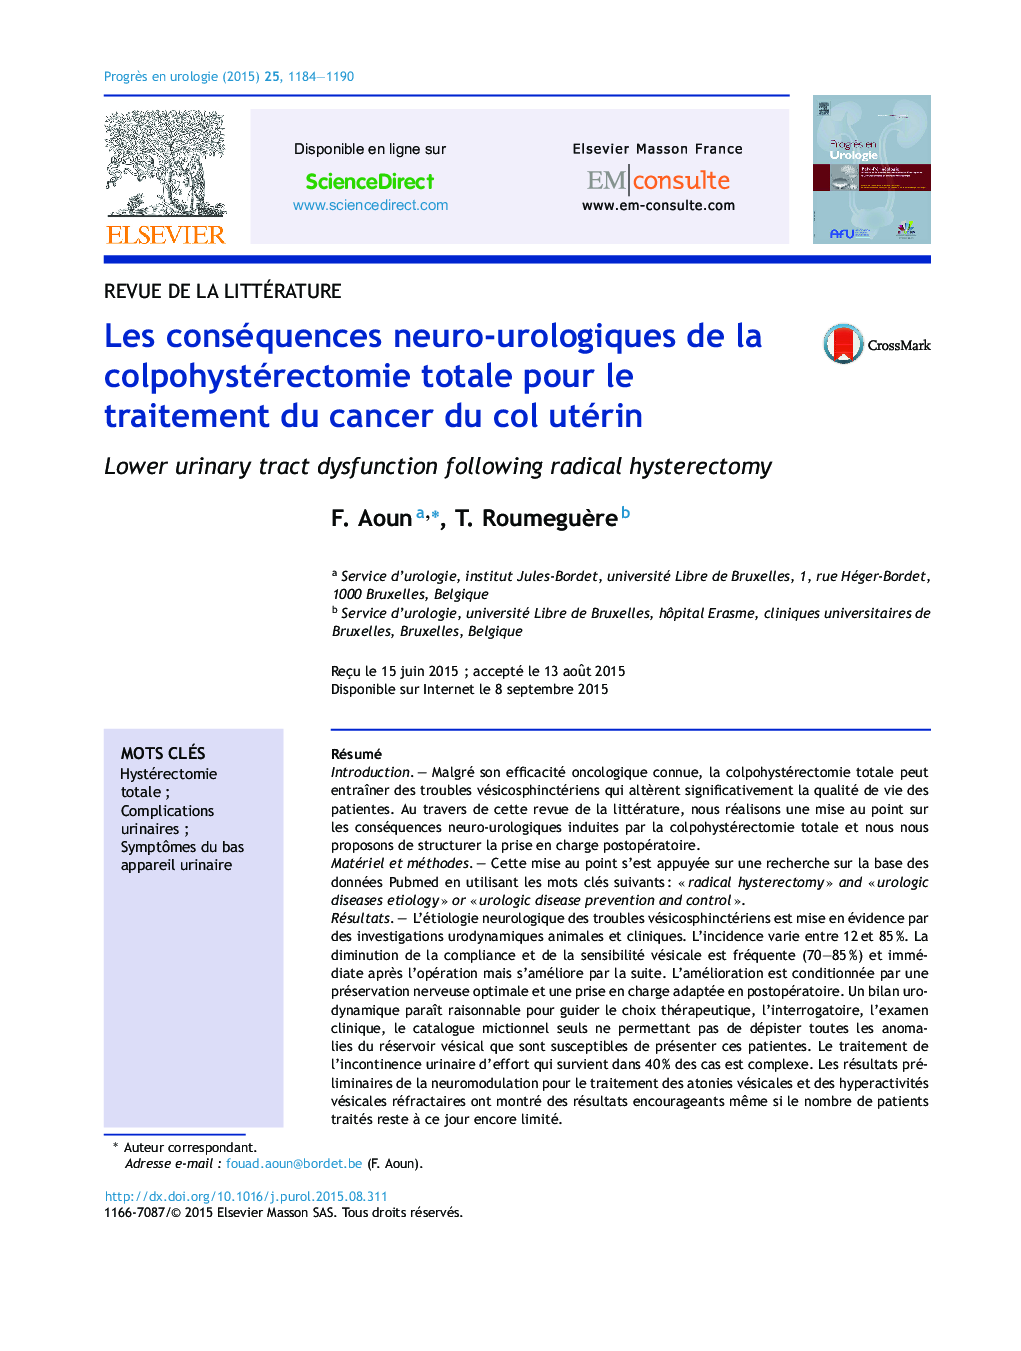 Les conséquences neuro-urologiques de la colpohystérectomie totale pour le traitement du cancer du col utérin